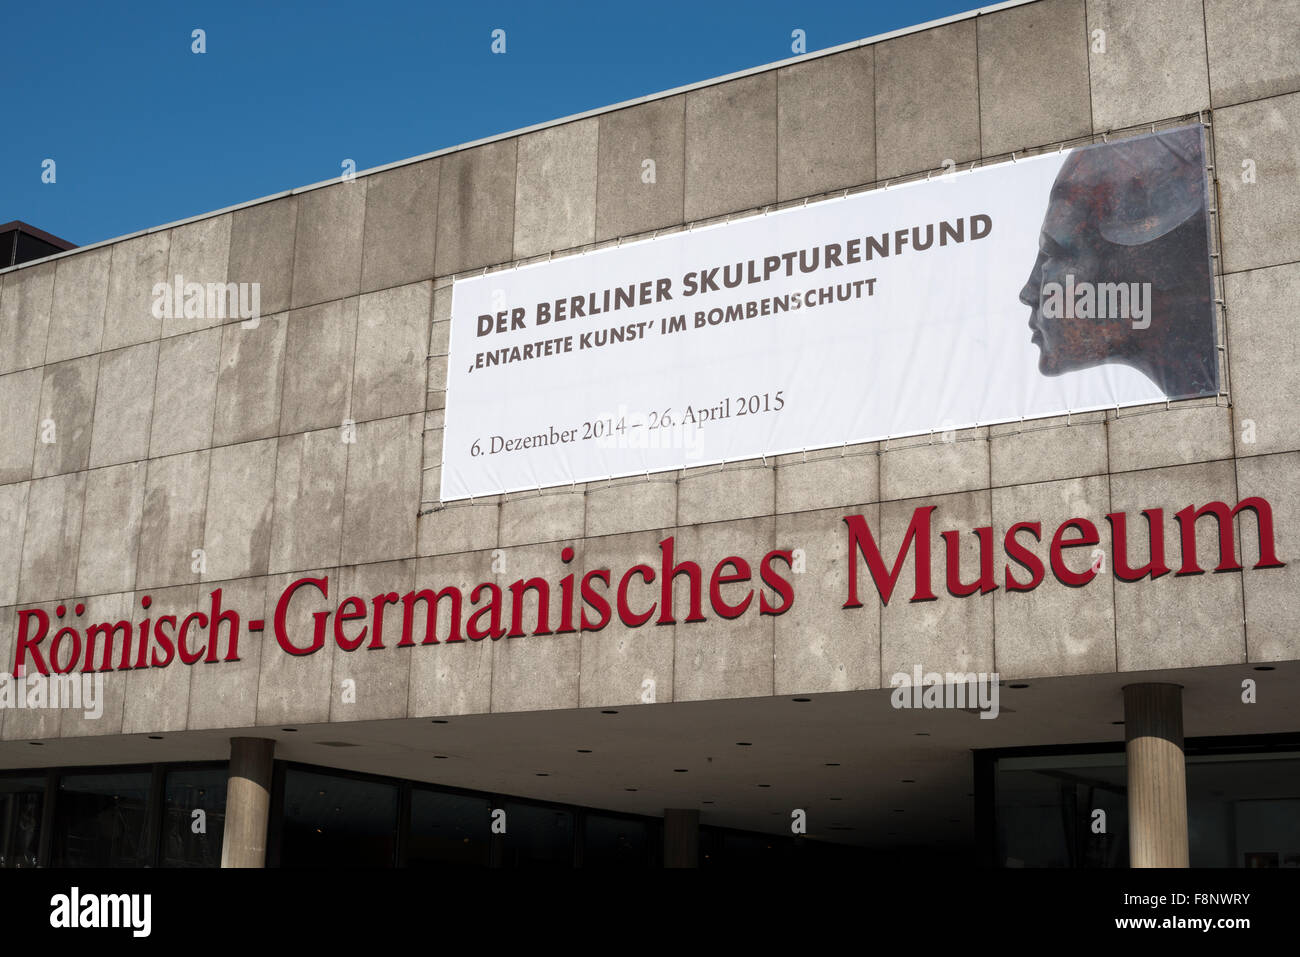 Der Berliner Skulpturenfund Ausstellung, Komisch-Germanisches Museum, Köln, Deutschland. Stockfoto